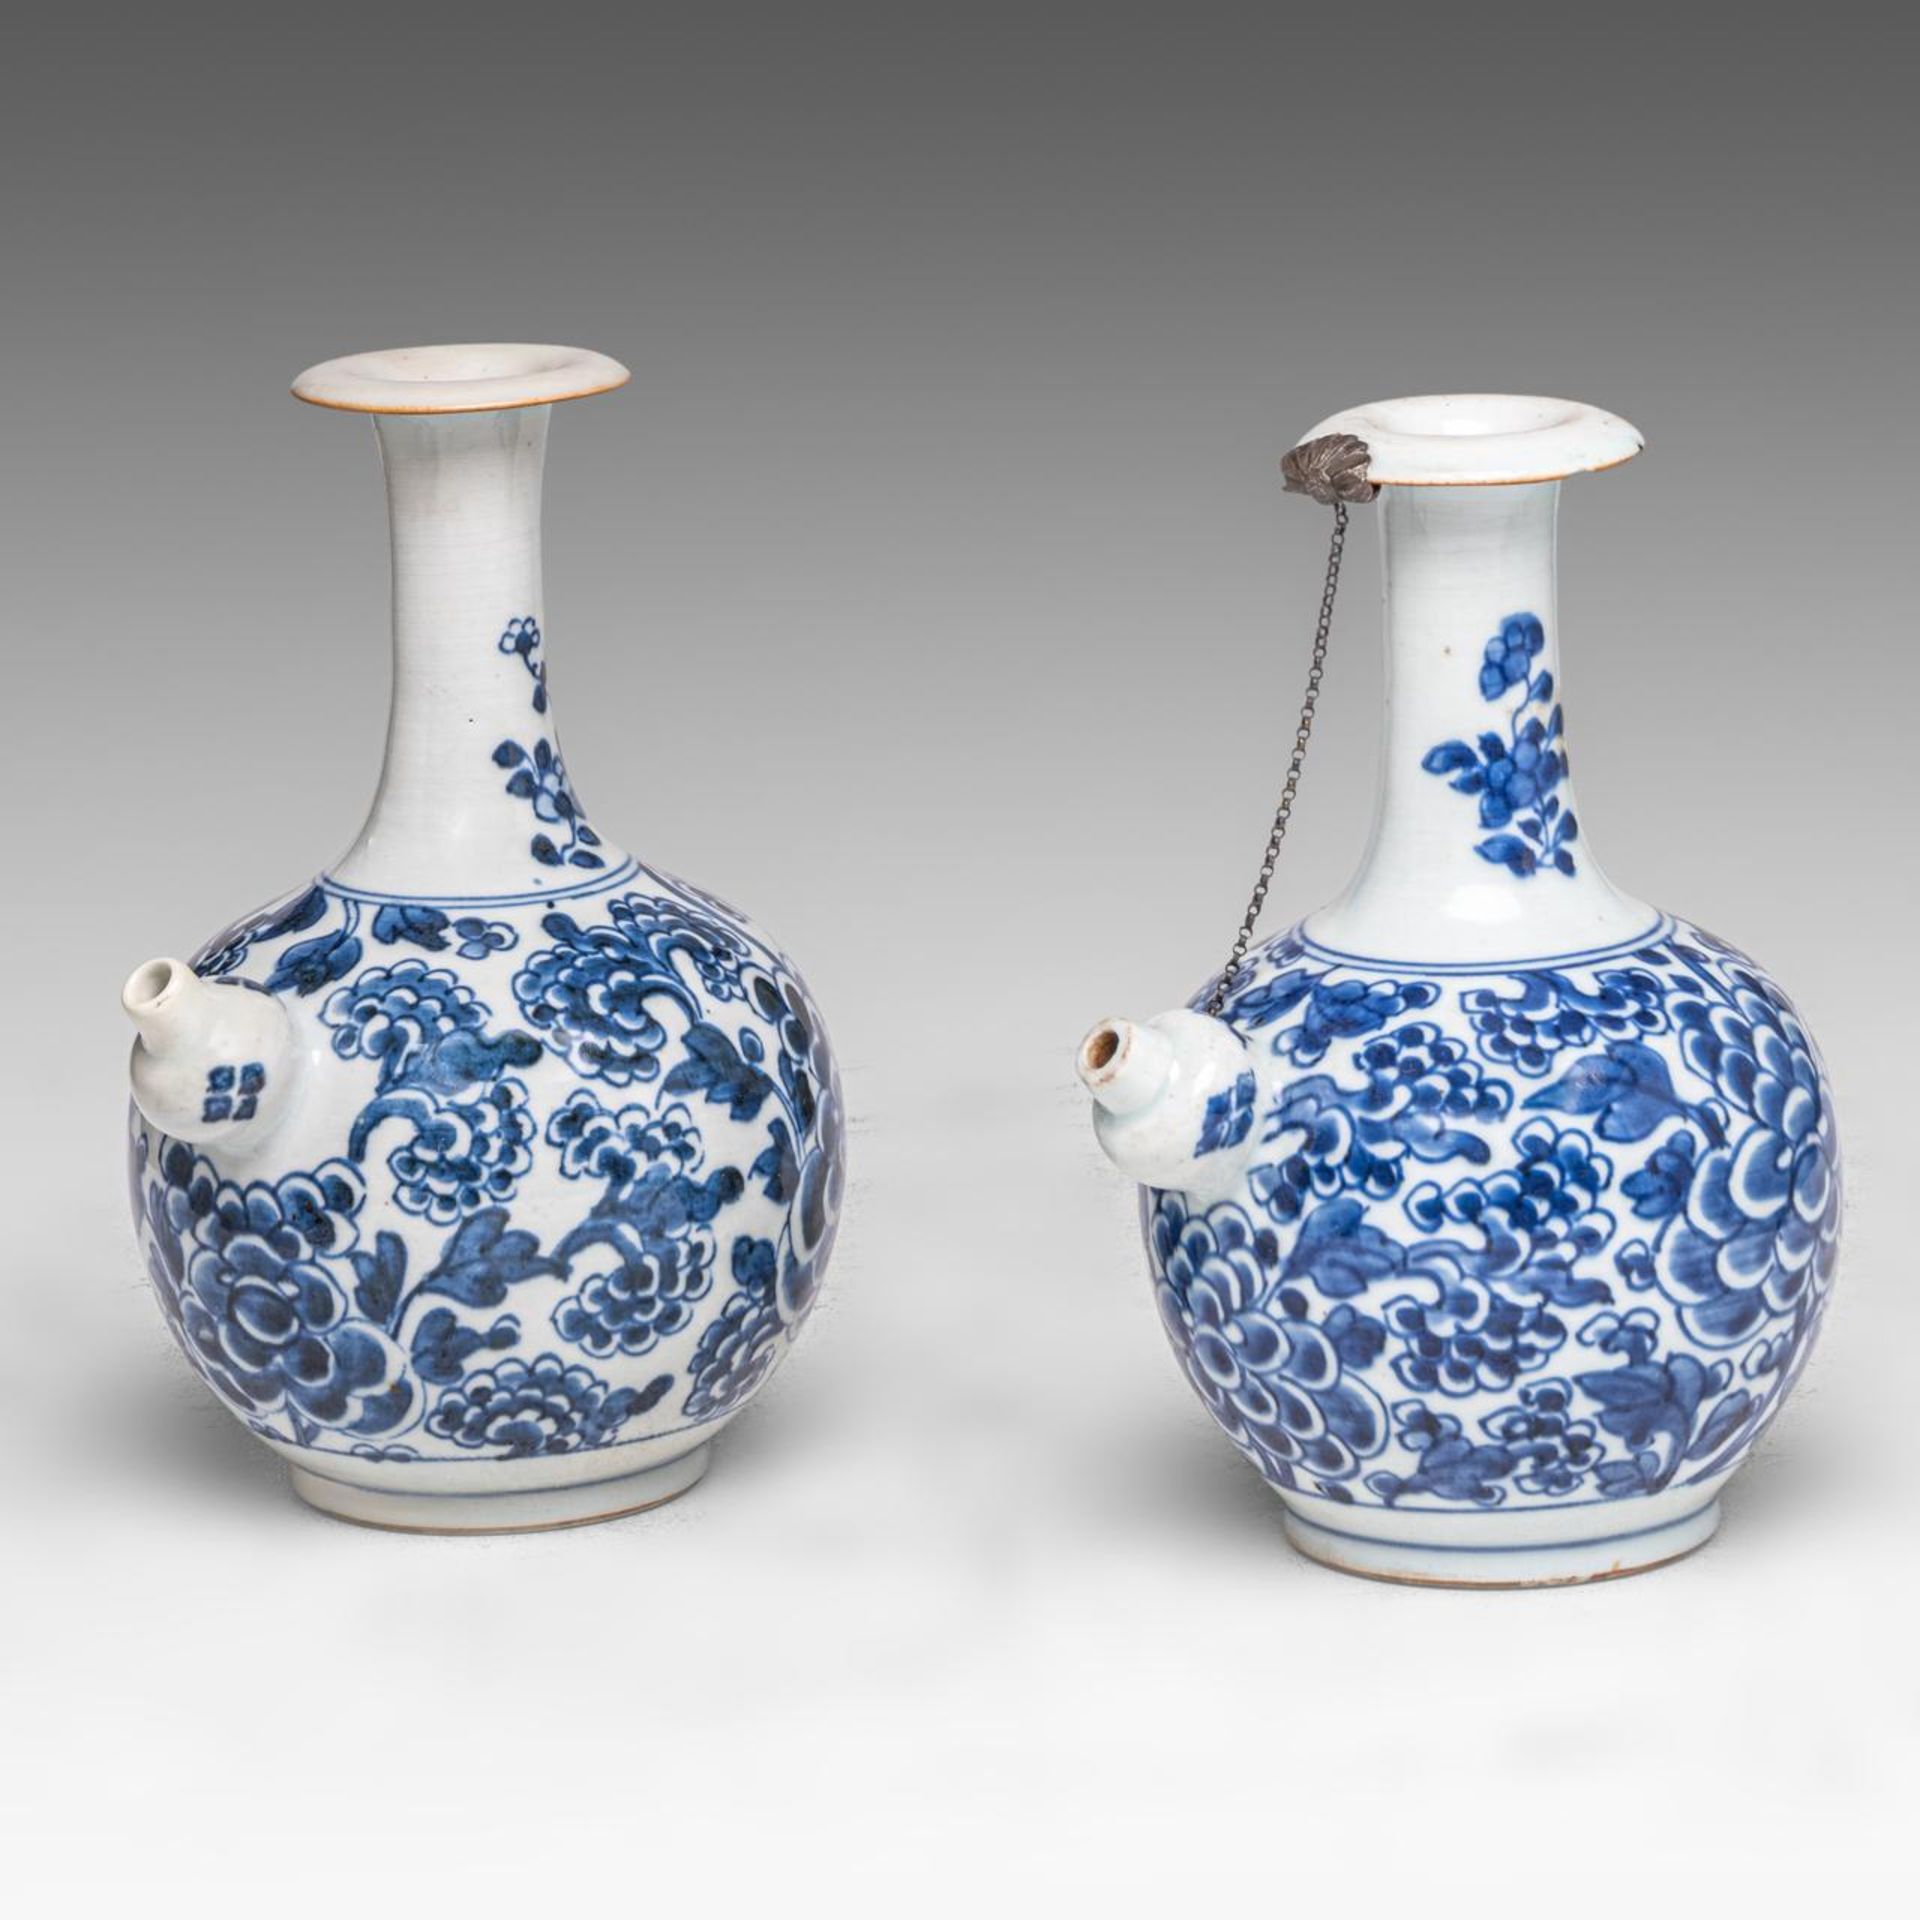 Two Chinese 'Peony scrolls' kendi jugs, Transitional/ Kangxi period, H 20 cm